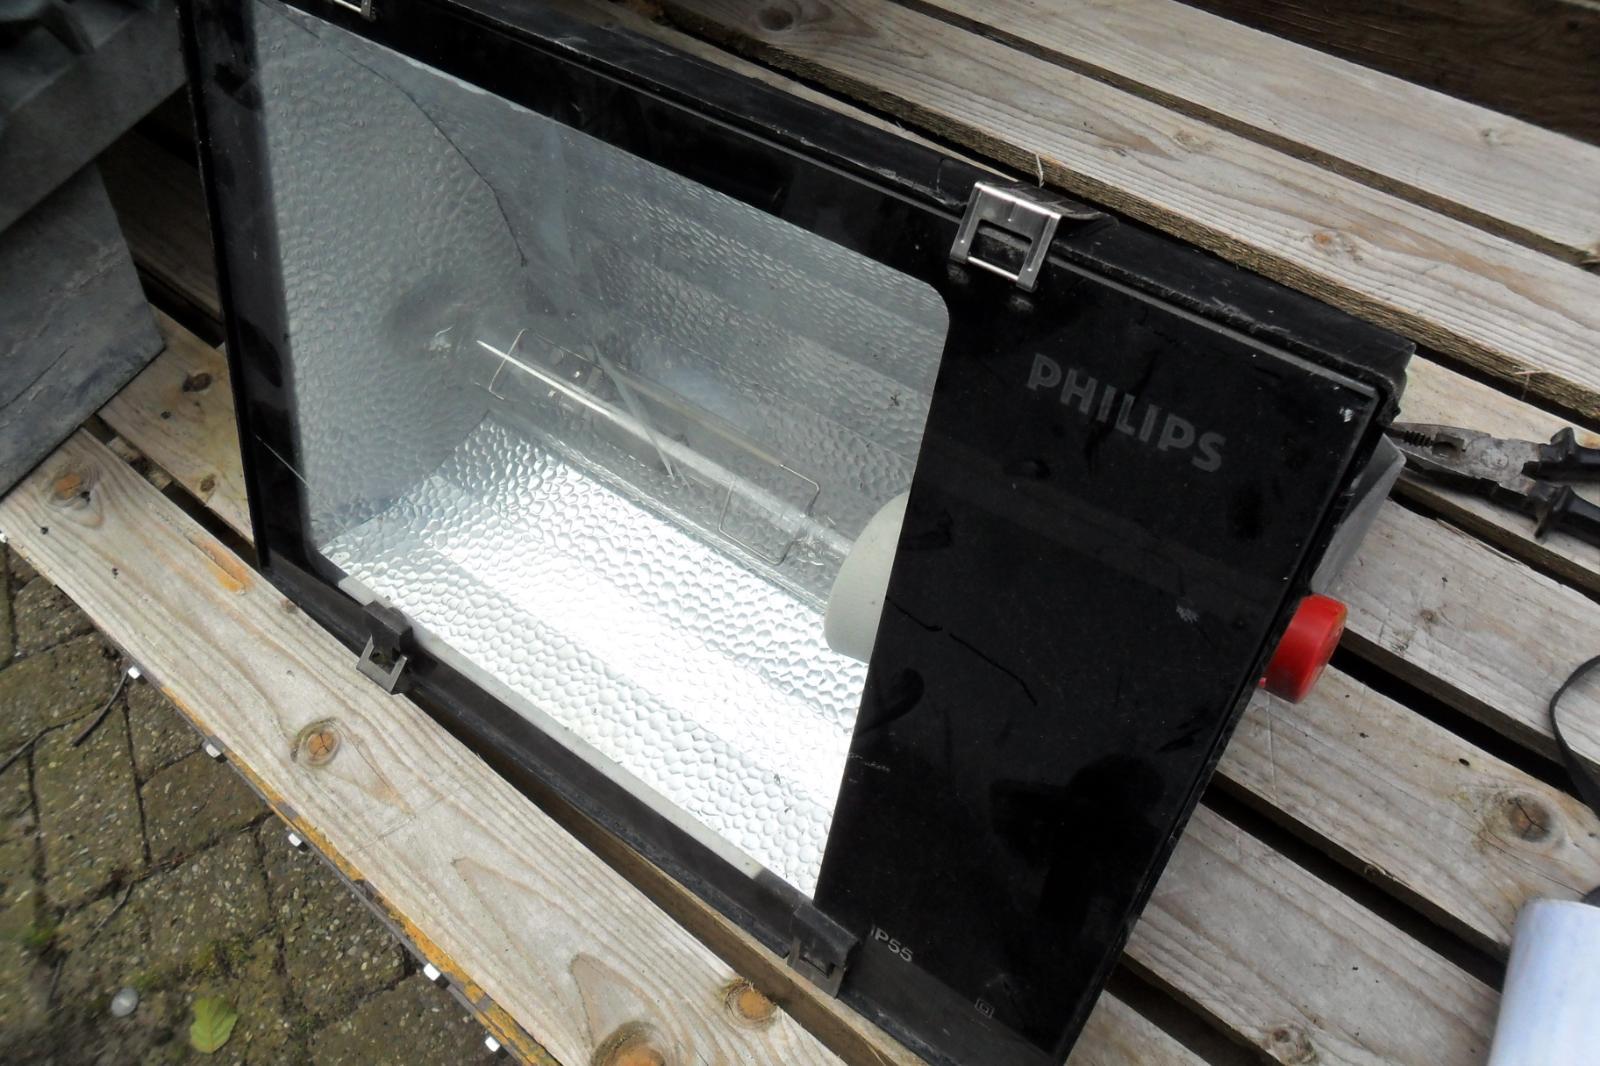 Openlijk team onthouden Philips bouwlamp 400 watt (a21)23